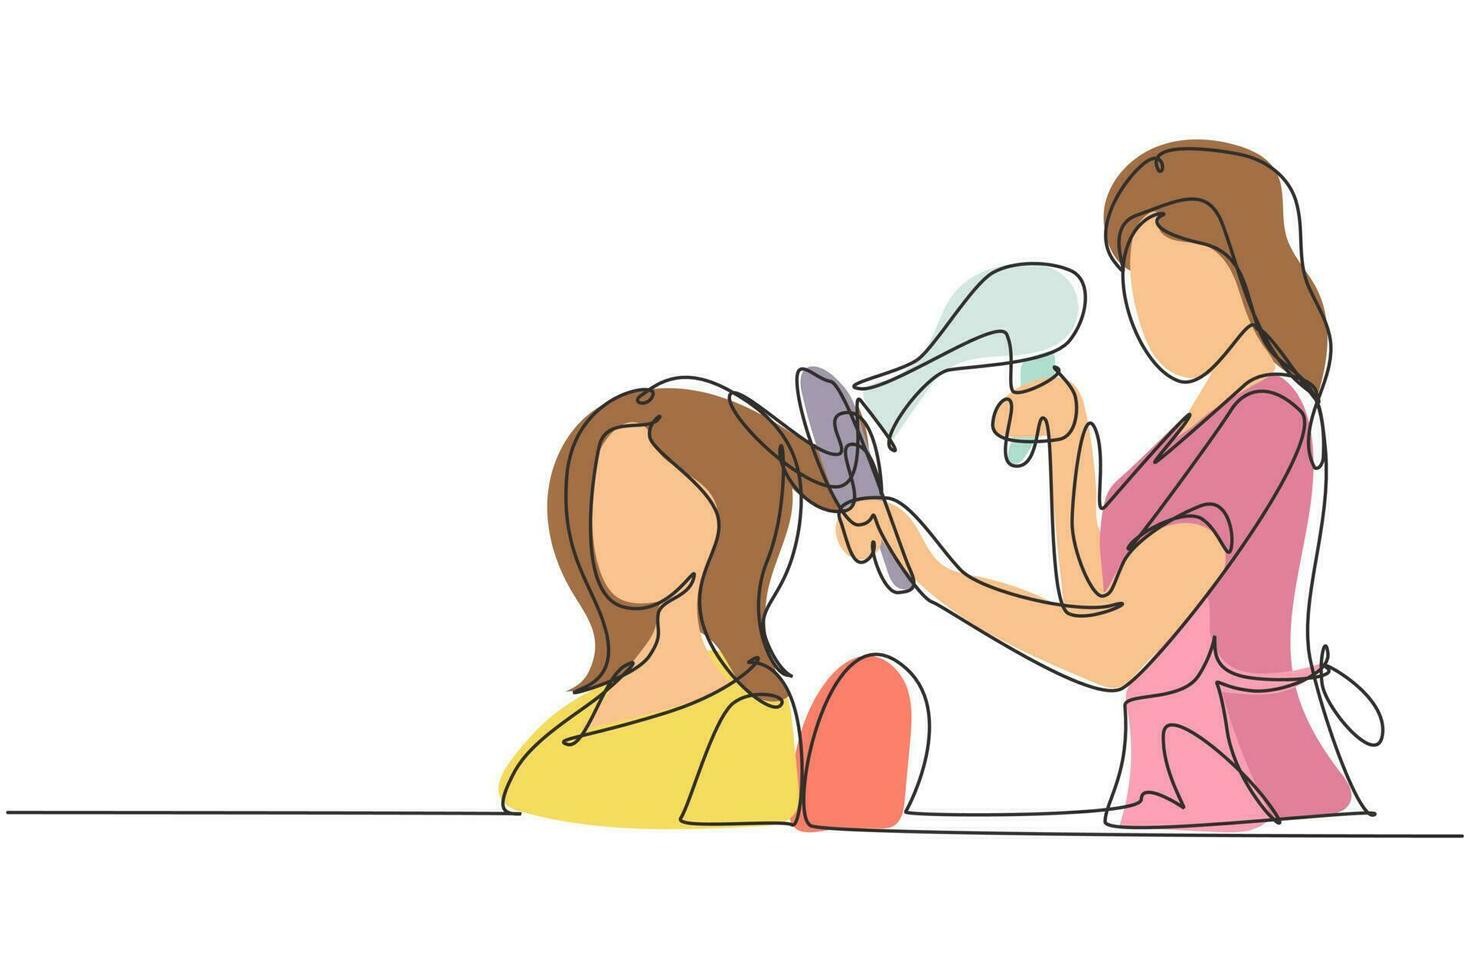 enda en rad ritning glad ung kvinna i frisörsalong. går för att byta stil och diskuterar hårstyling med sin frisör som håller i en hårtork. modern kontinuerlig linje rita design grafisk vektor